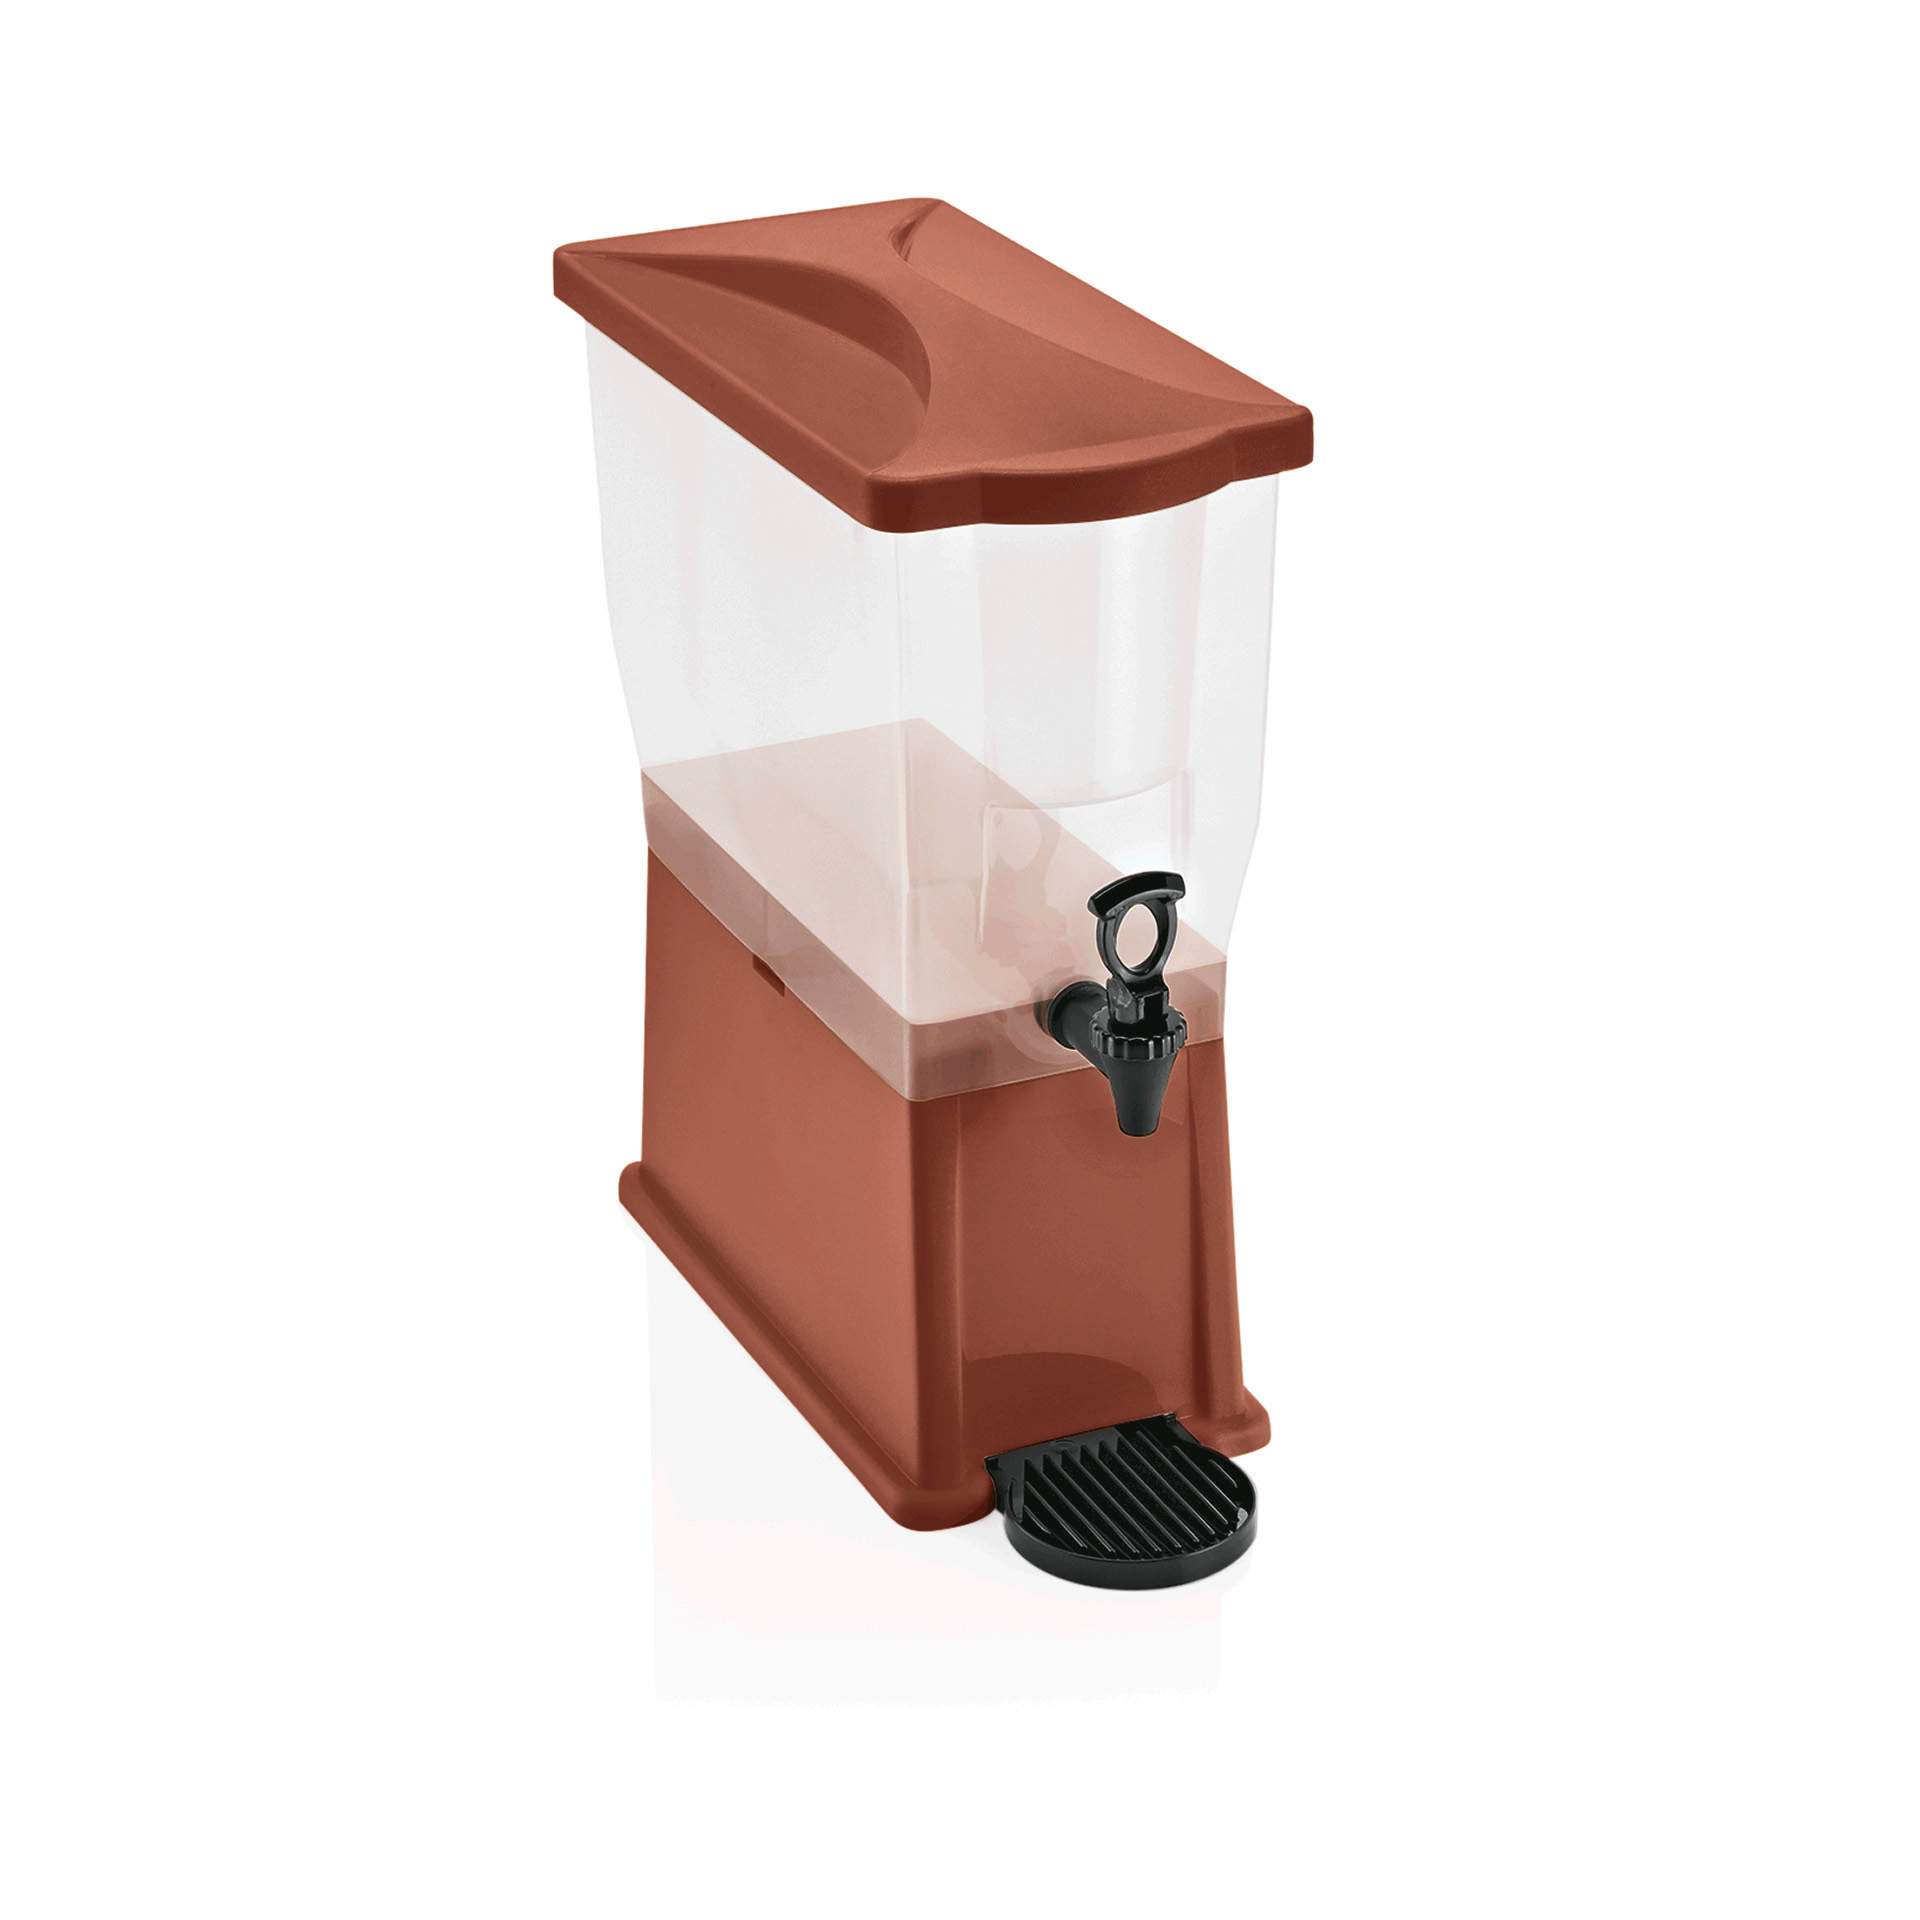 Getränkedispenser - Behälter mit Skalierung von 6 bis 14 ltr. - braun - Abm. 41,5 x 20,5 x 52,5 cm - Inhalt 14 l - Polypropylen - 9932110-A